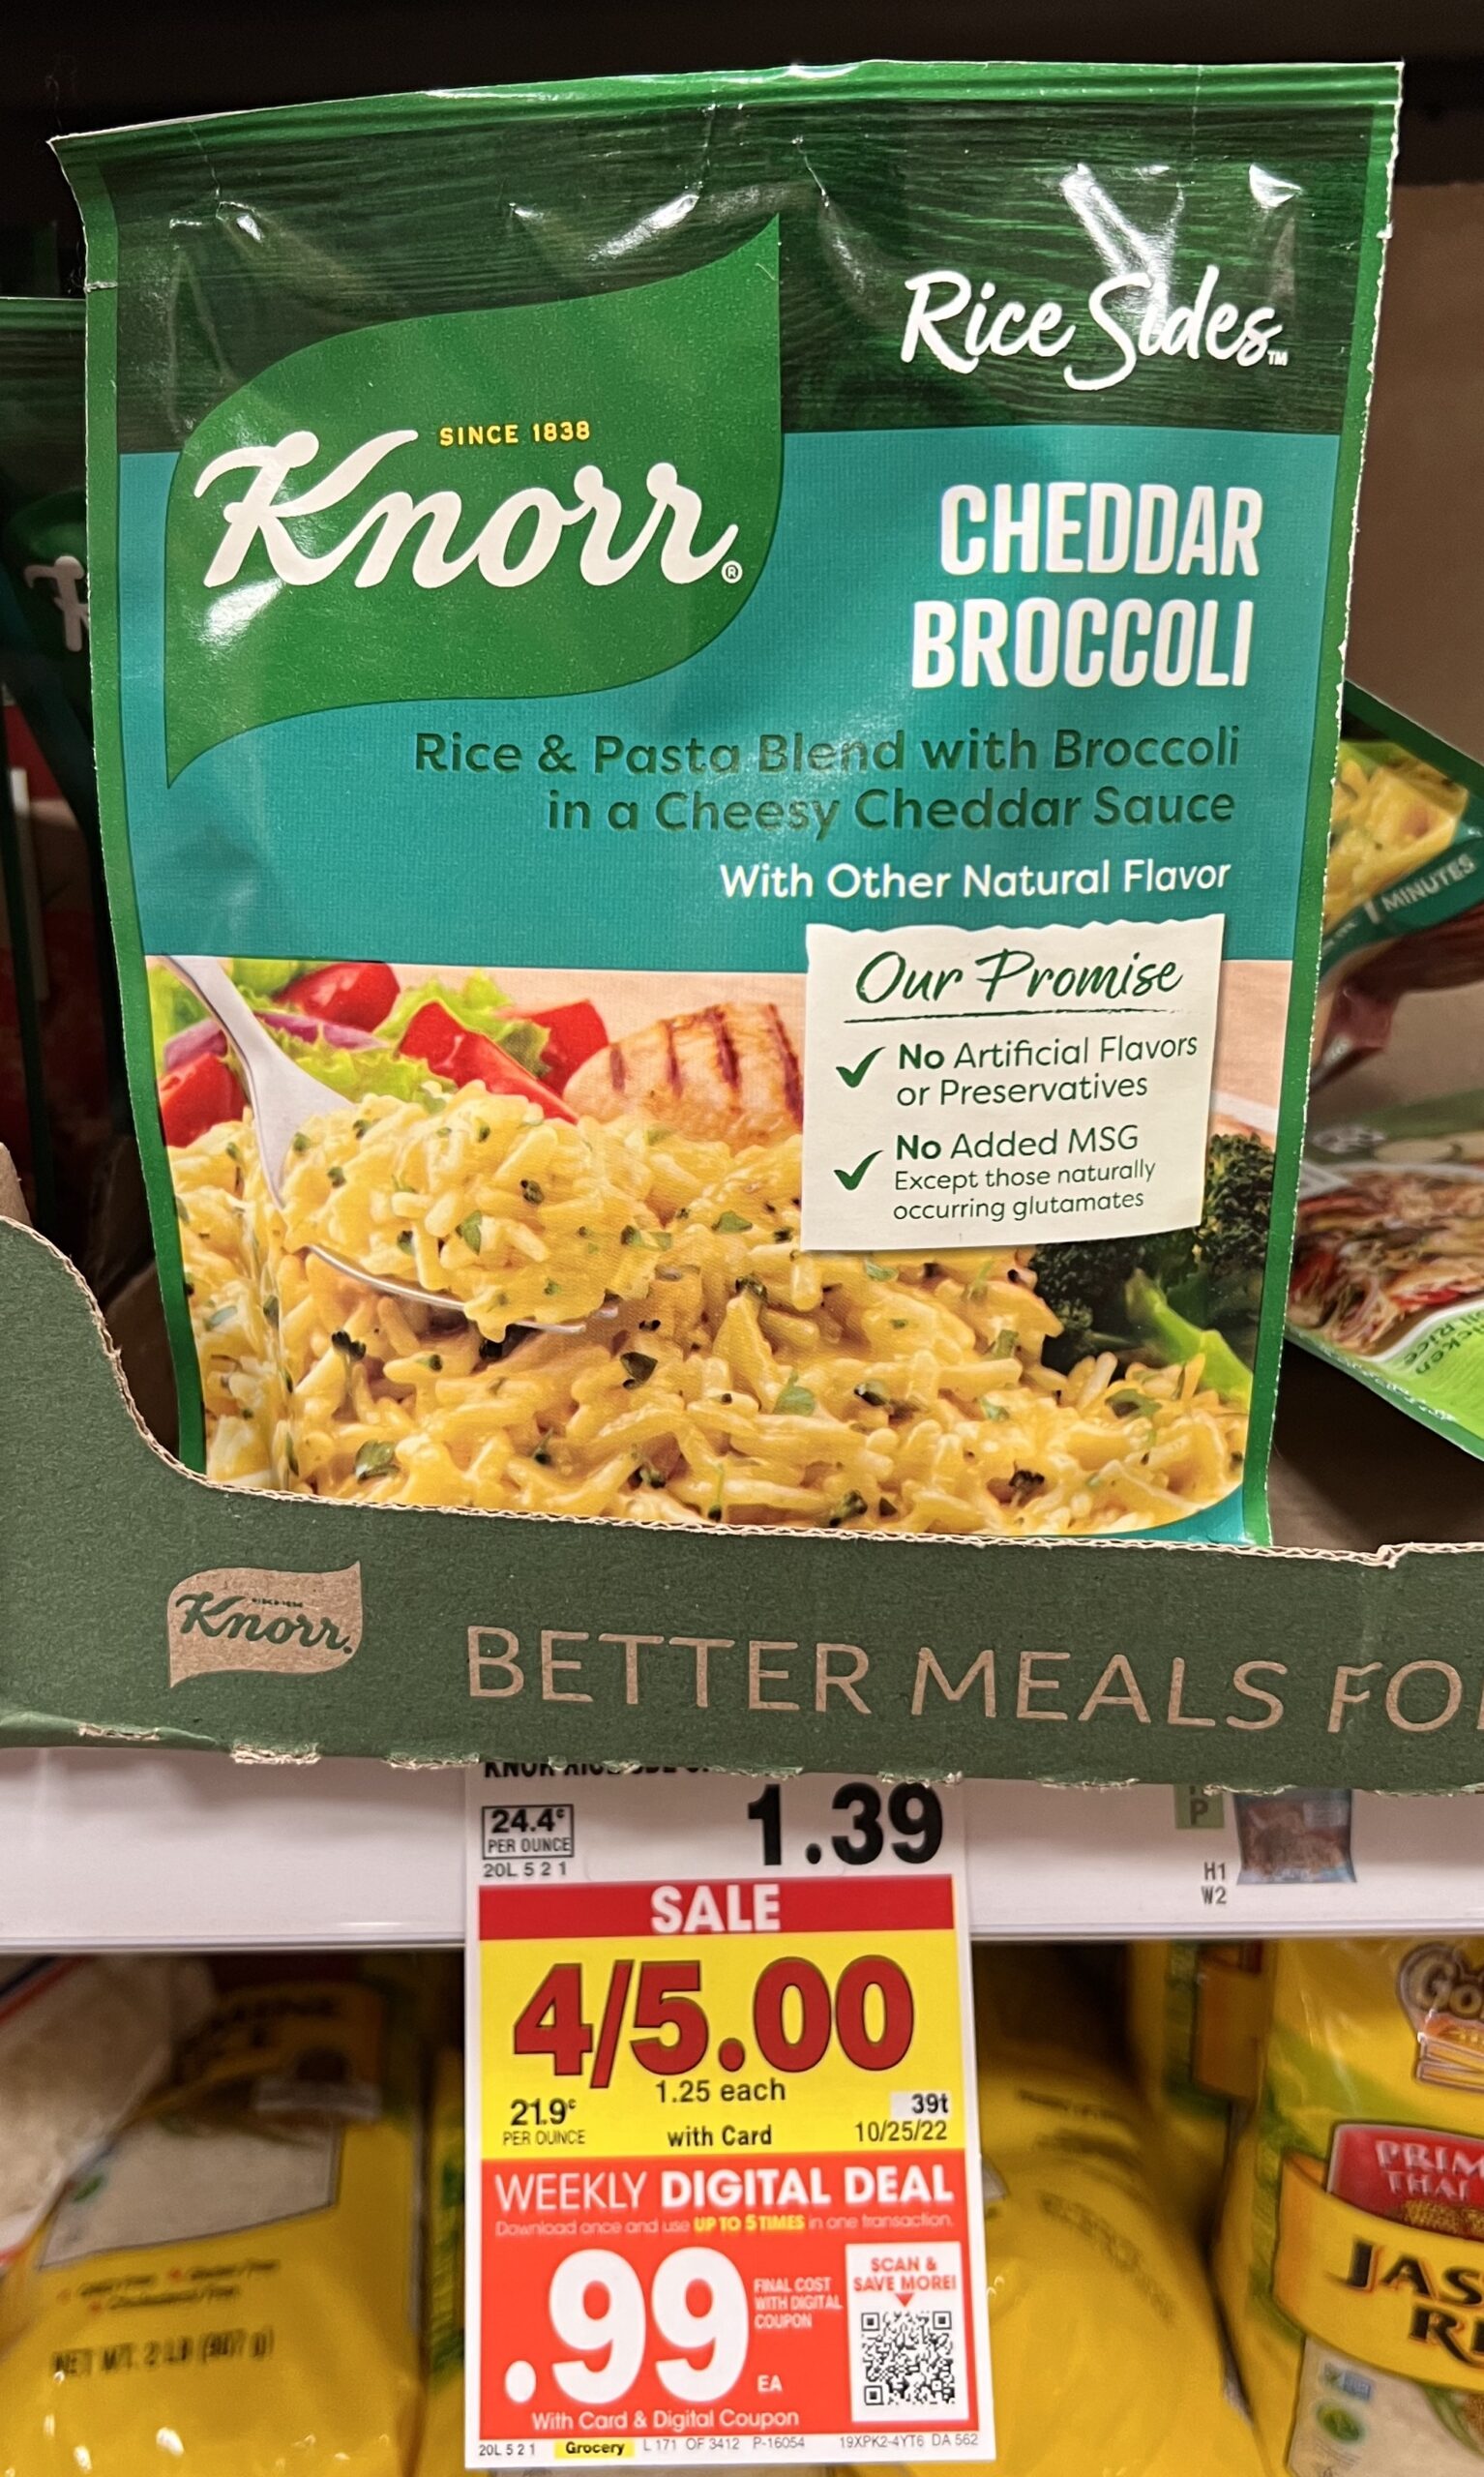 Knorr Rice Side Kroger Shelf Image_5